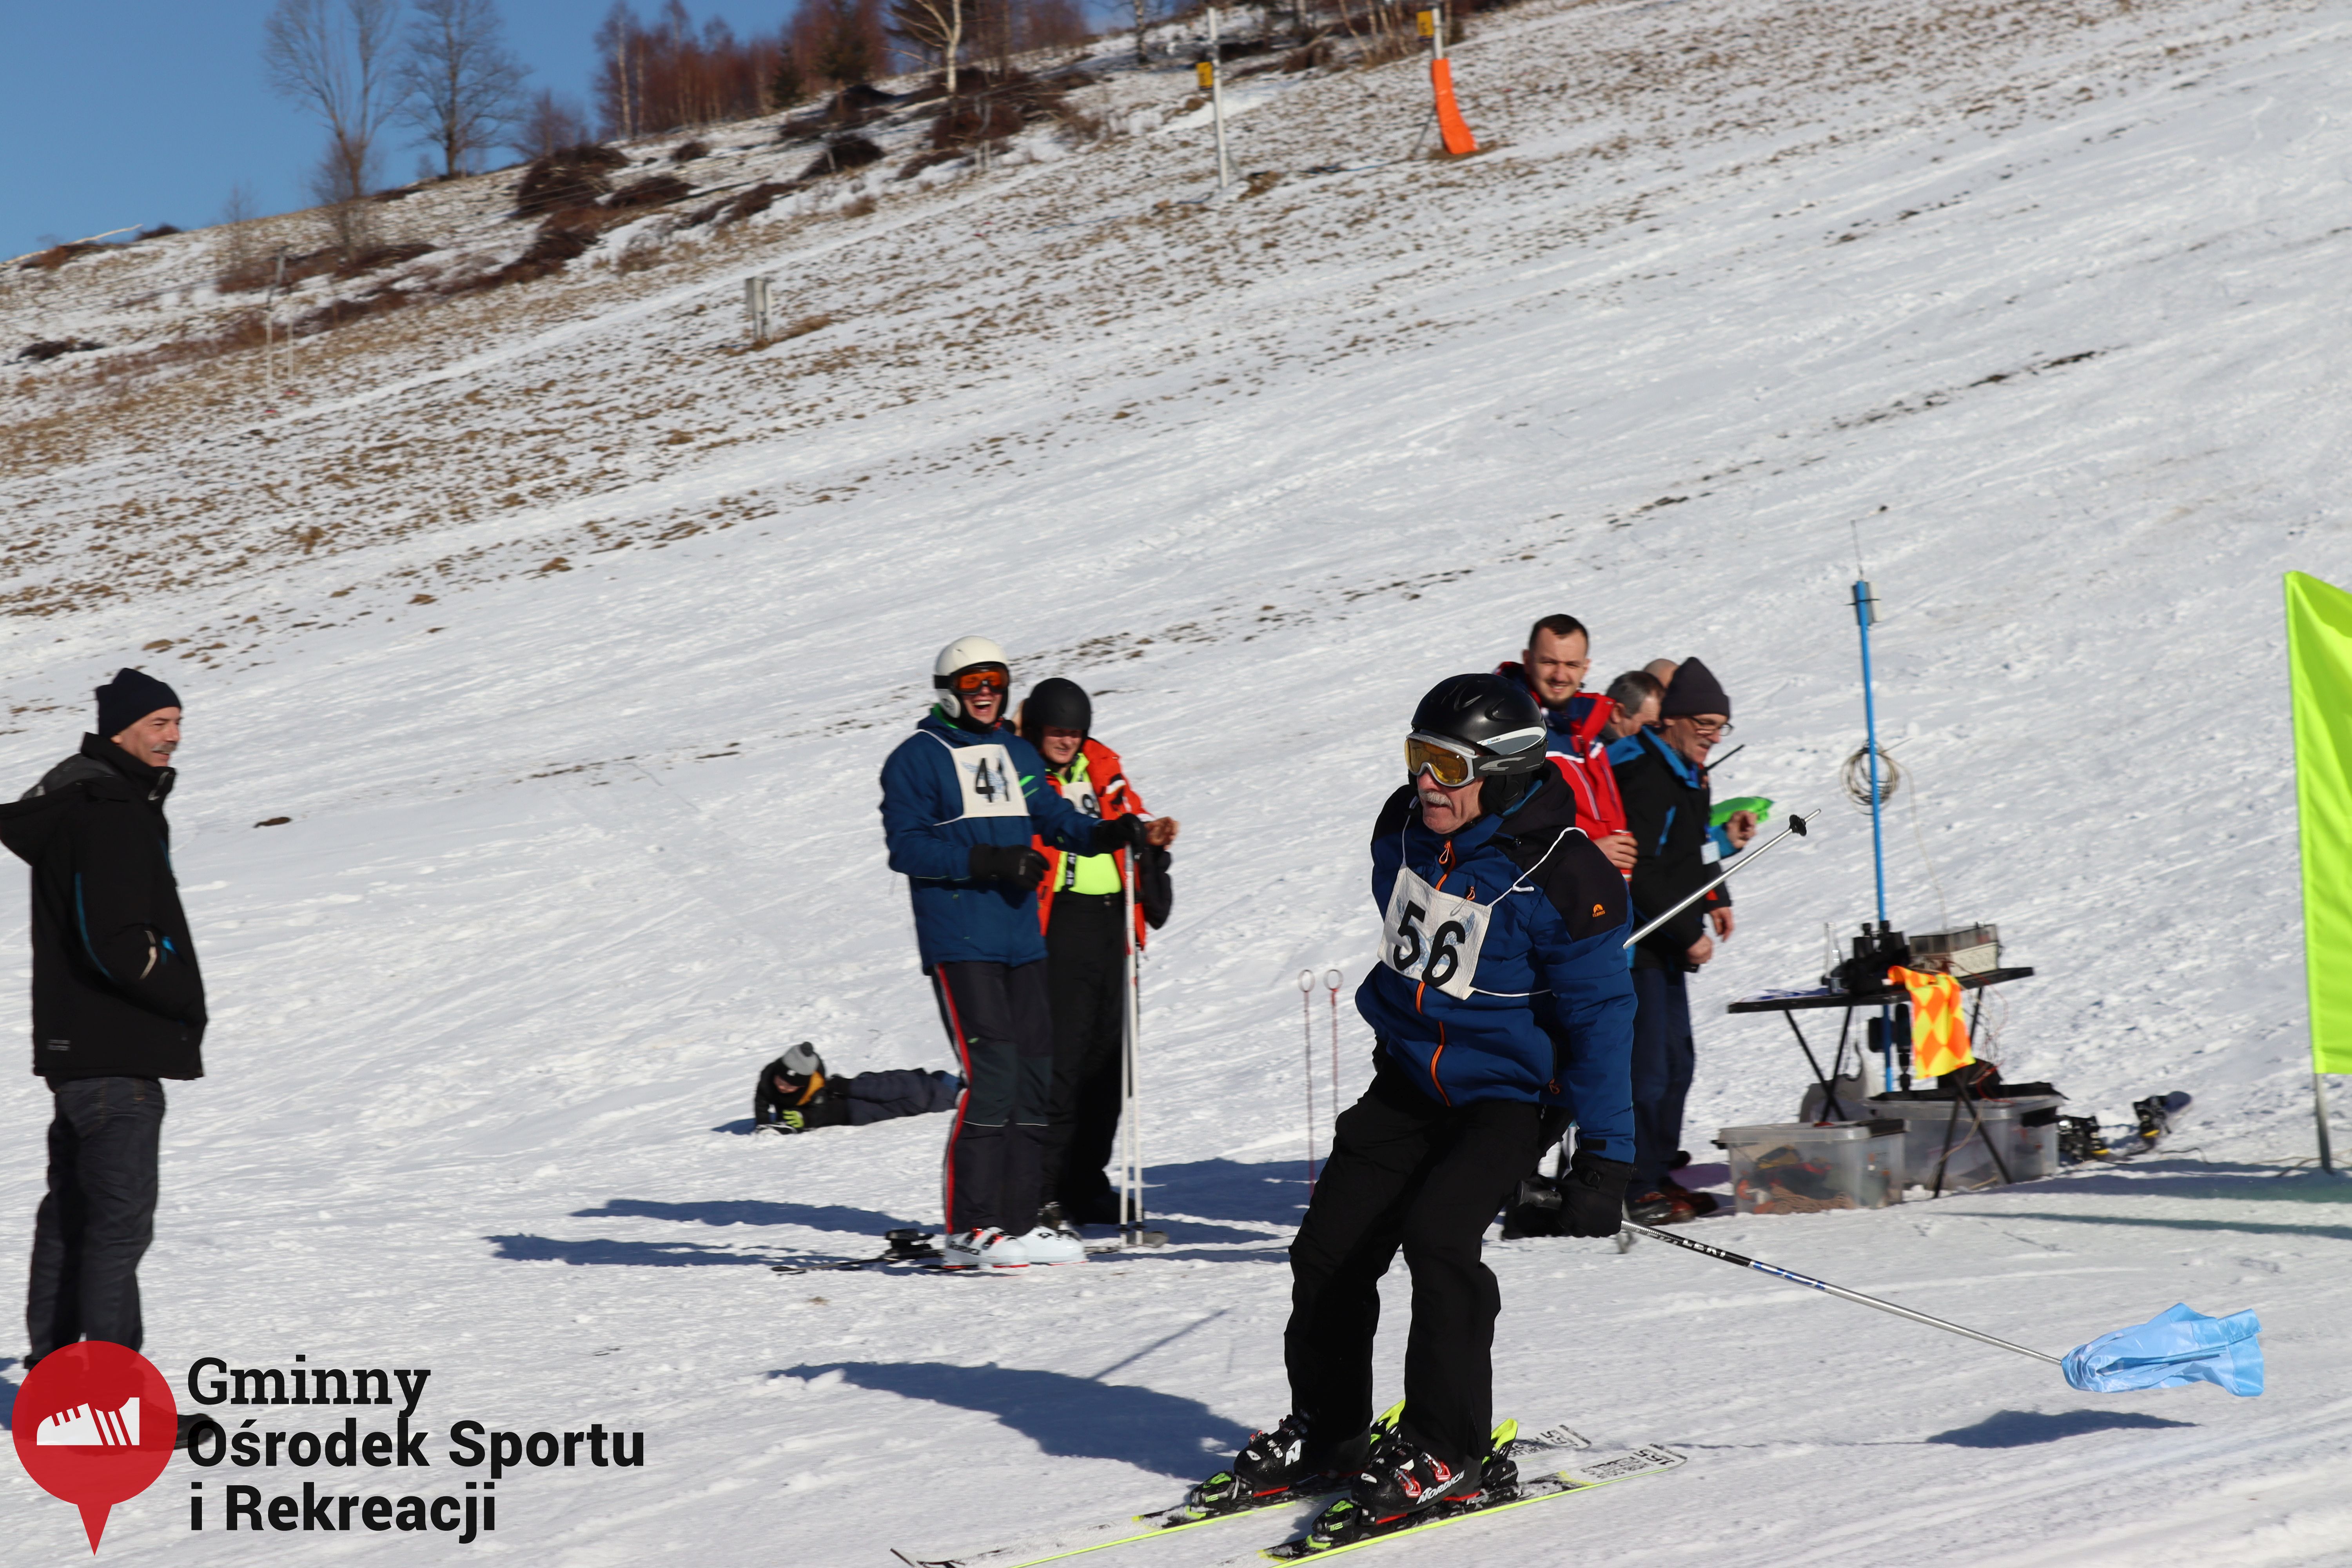 2022.02.12 - 18. Mistrzostwa Gminy Woszakowice w narciarstwie094.jpg - 2,09 MB